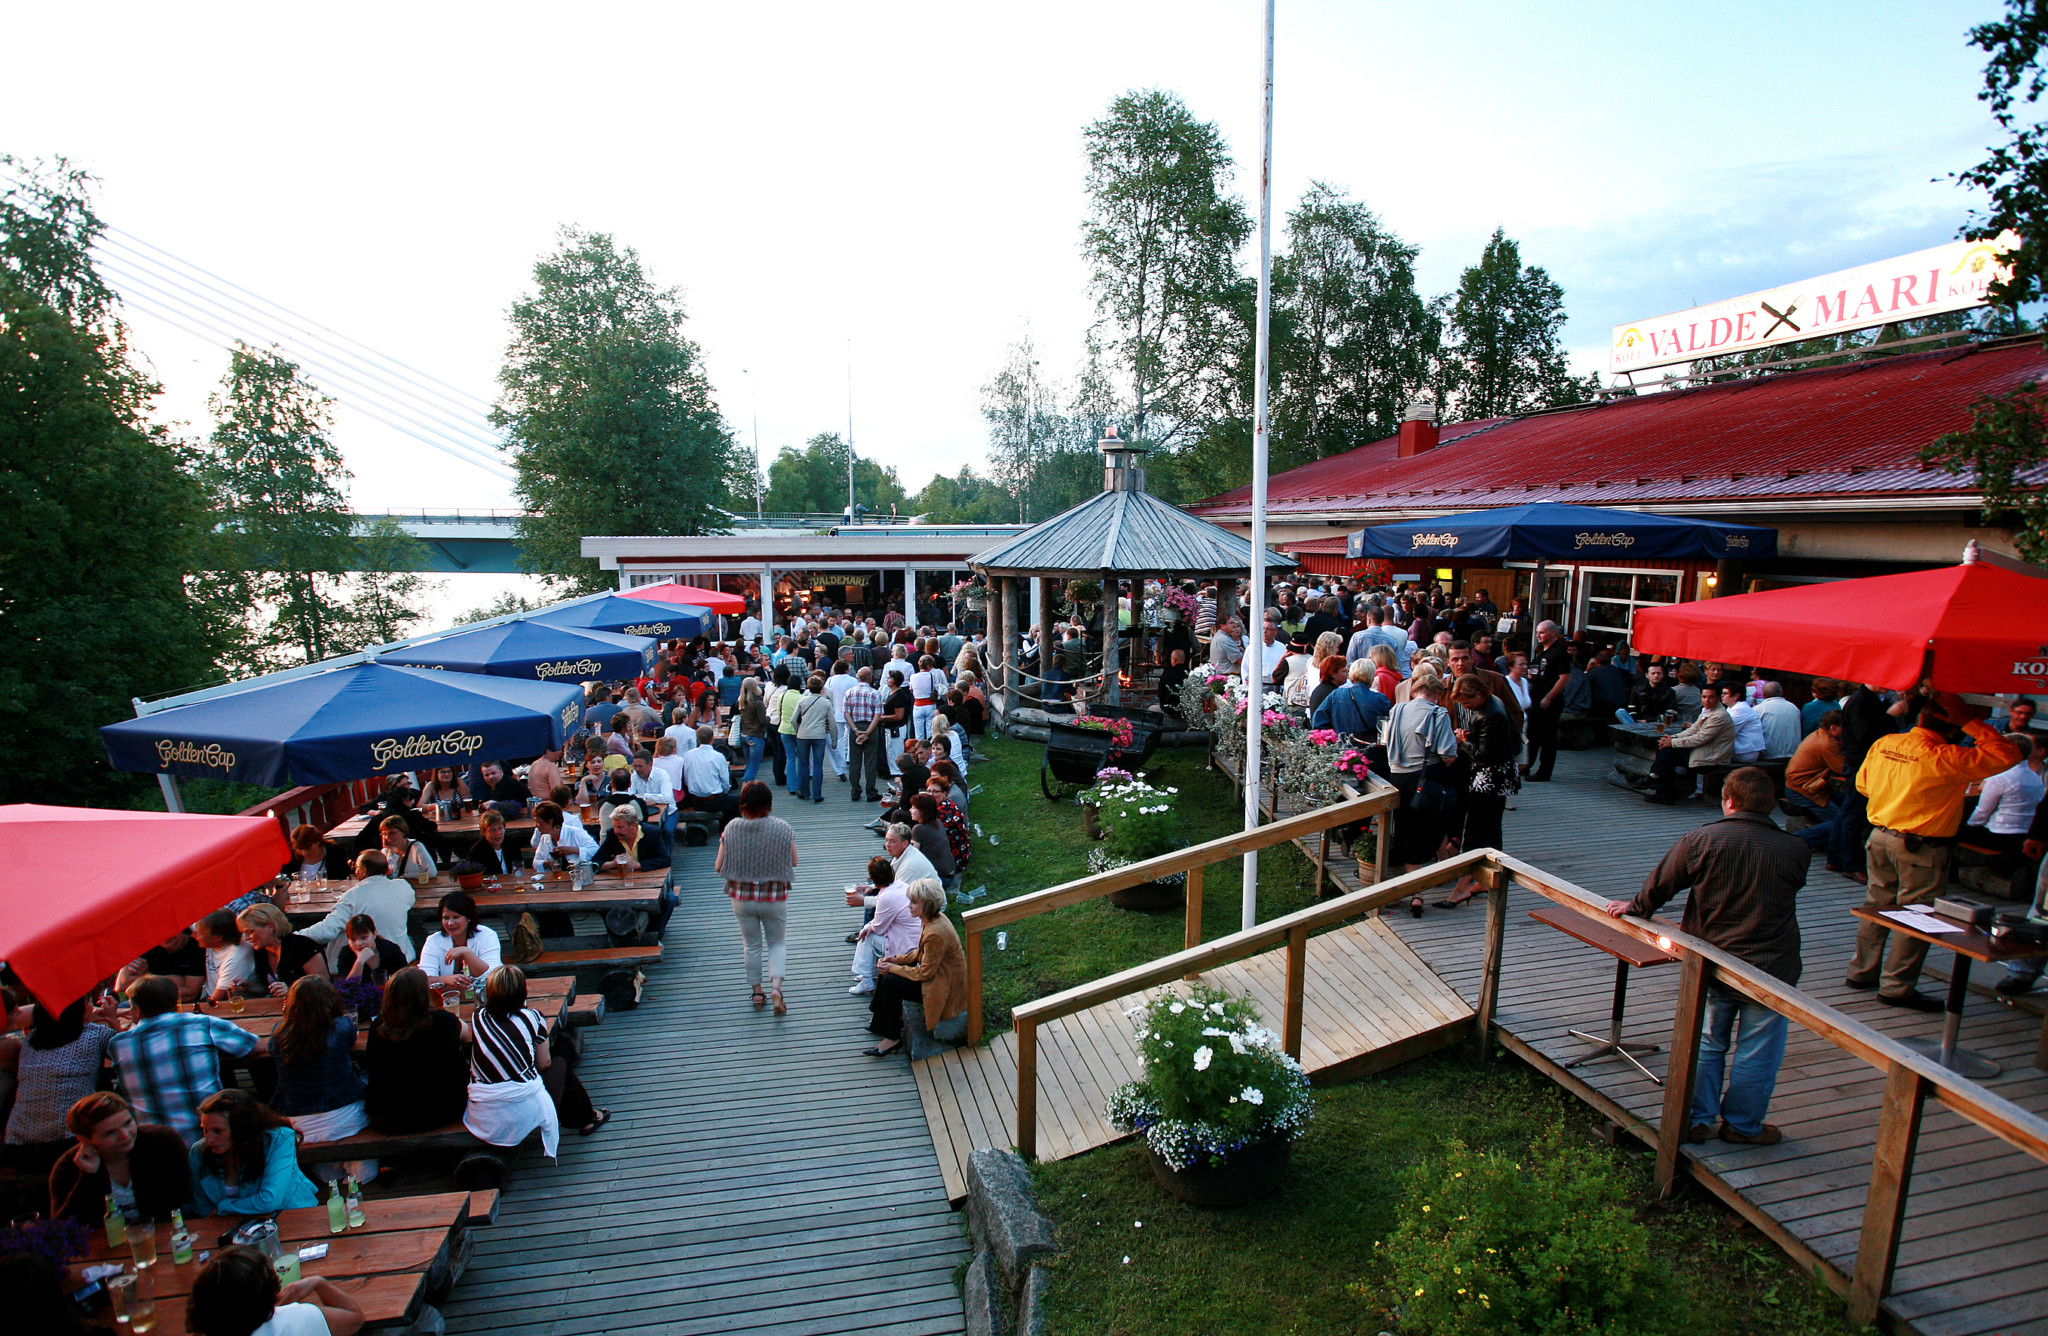 Restaurant Valdemari summer teracce in Rovaniemi Lapland Finland 